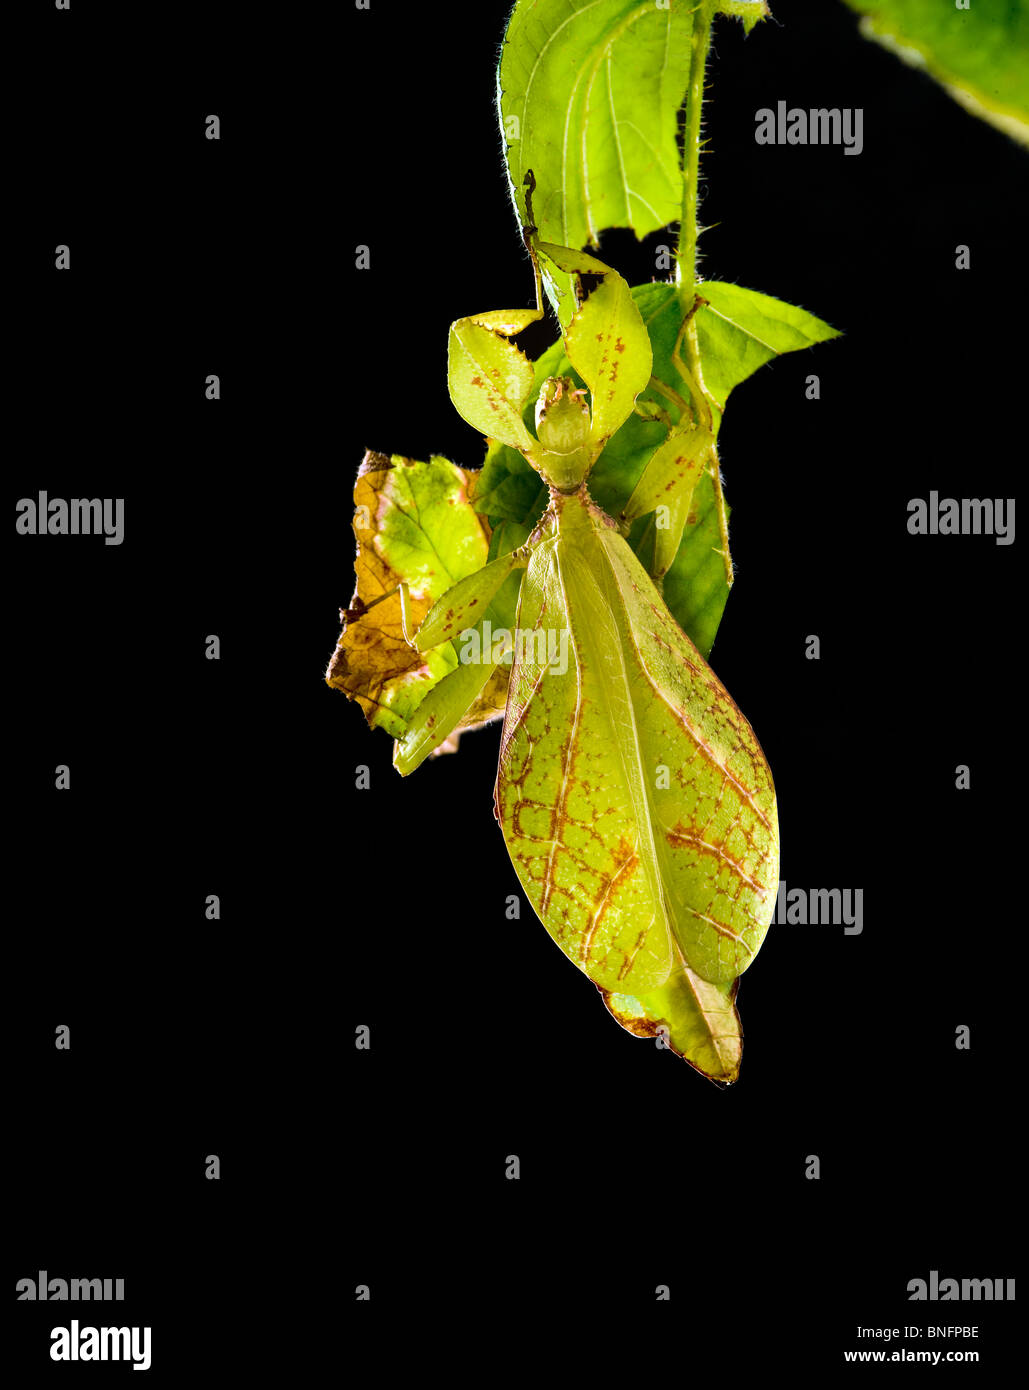 Phyllium Sp. Philippinen Blatt Insekt Essen Essen Gegenlicht durchscheinende Geist gespenstisch dunklen Hintergrund schwarz Leafinsect Stick appe Stockfoto